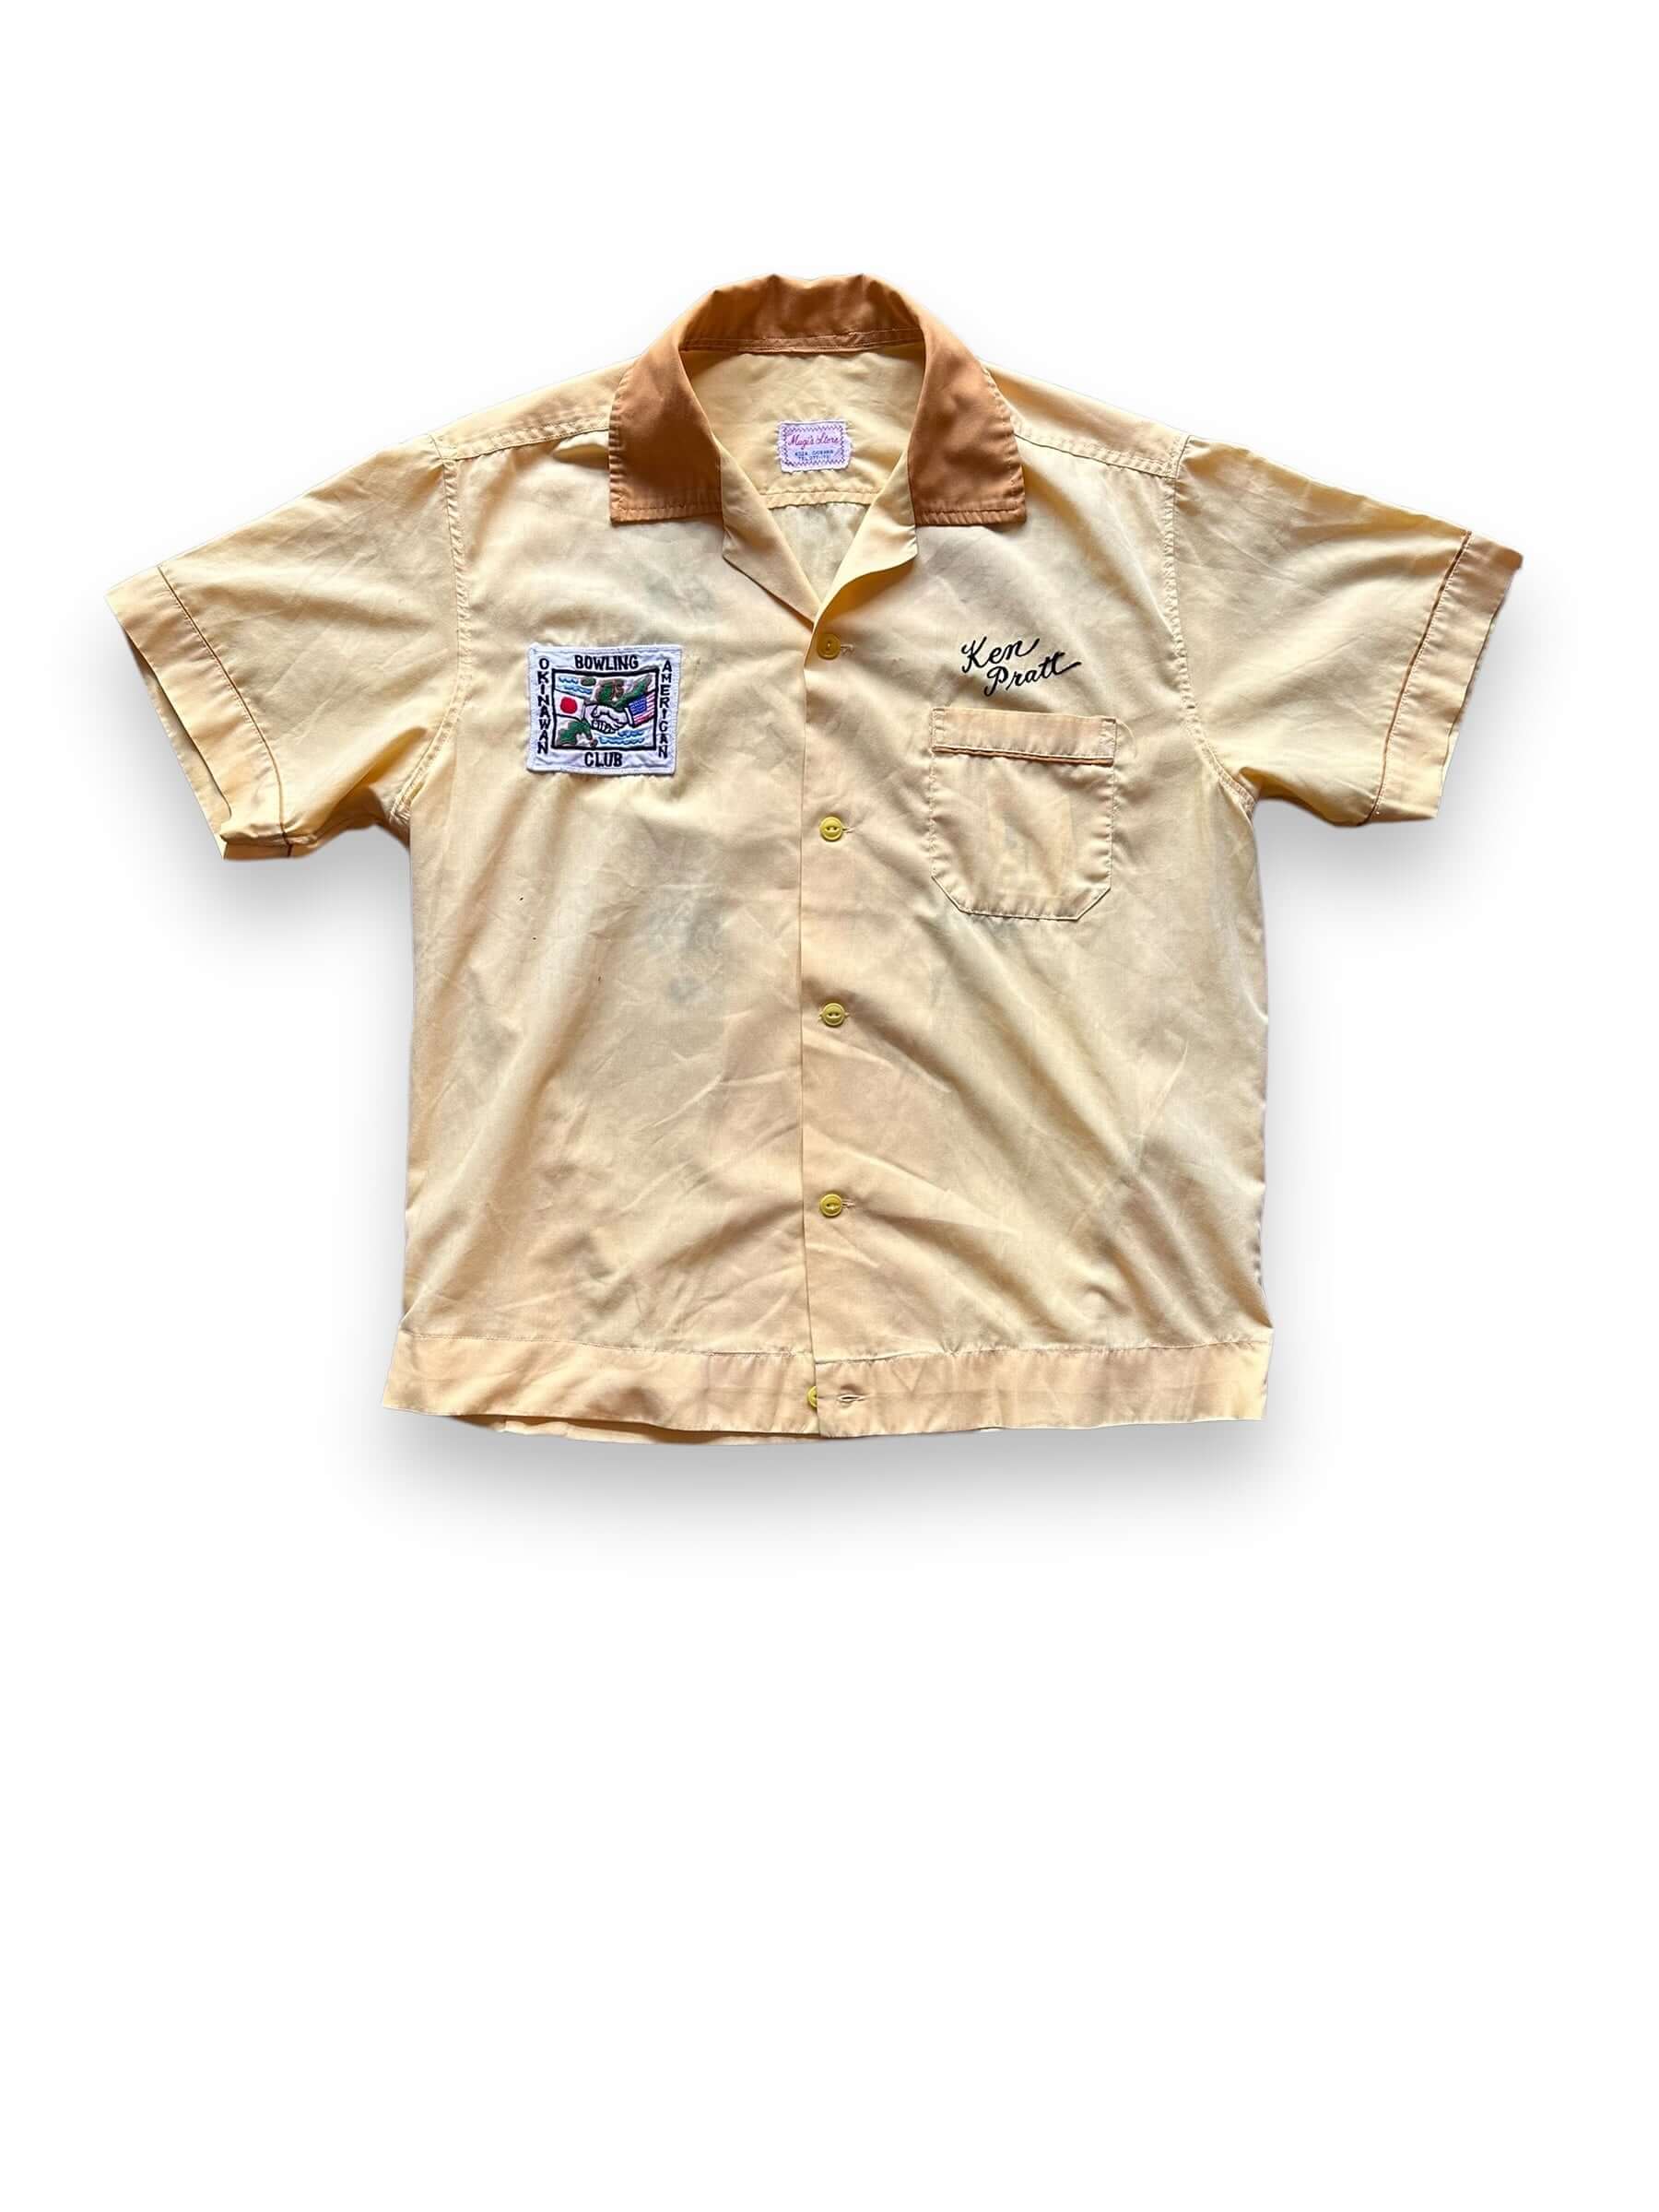 Front View of Vintage Mugi's Okinawa Bowling Shirt SZ L | Vintage Bowling Shirt Seattle